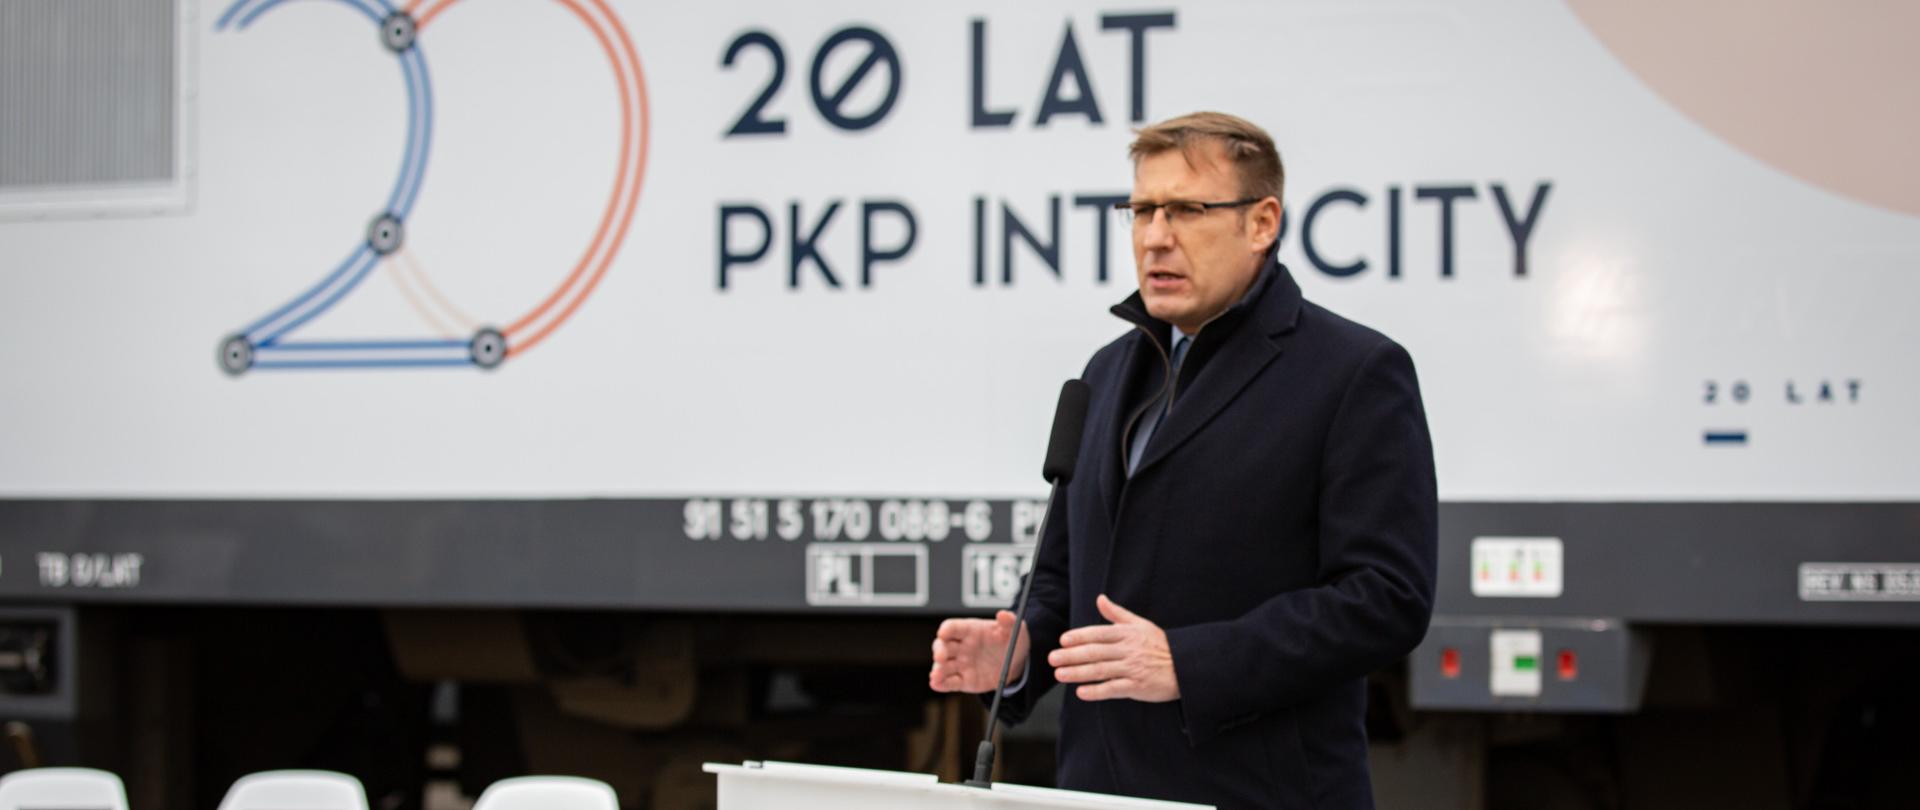 Wiceminister Maciej Małecki przemawia podczas uroczystości podpisania umowy PKP Intercity z NEWAG S.A. na dostawę nowych wielosystemowych lokomotyw. W tle baner z napisem 20 lat PKP Intercity.